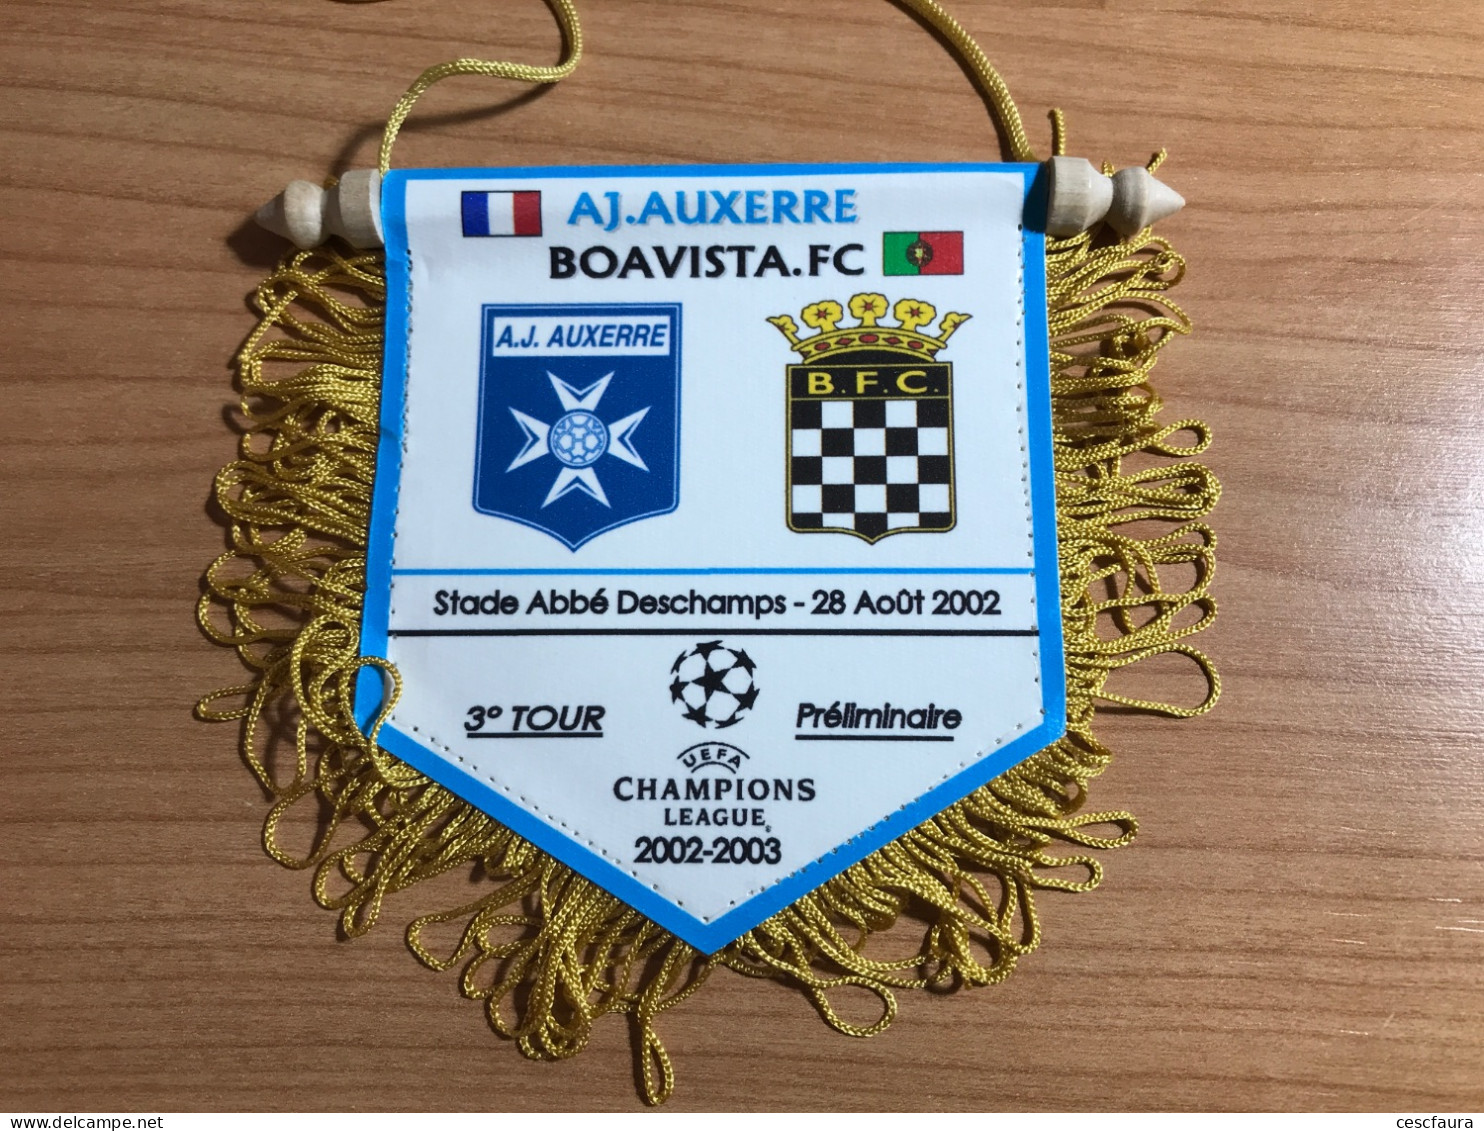 Fanion Du Match Boavista FC Vs AJ Auxerre - 3eme Tour Champions League - Aller Et Retour - Apparel, Souvenirs & Other